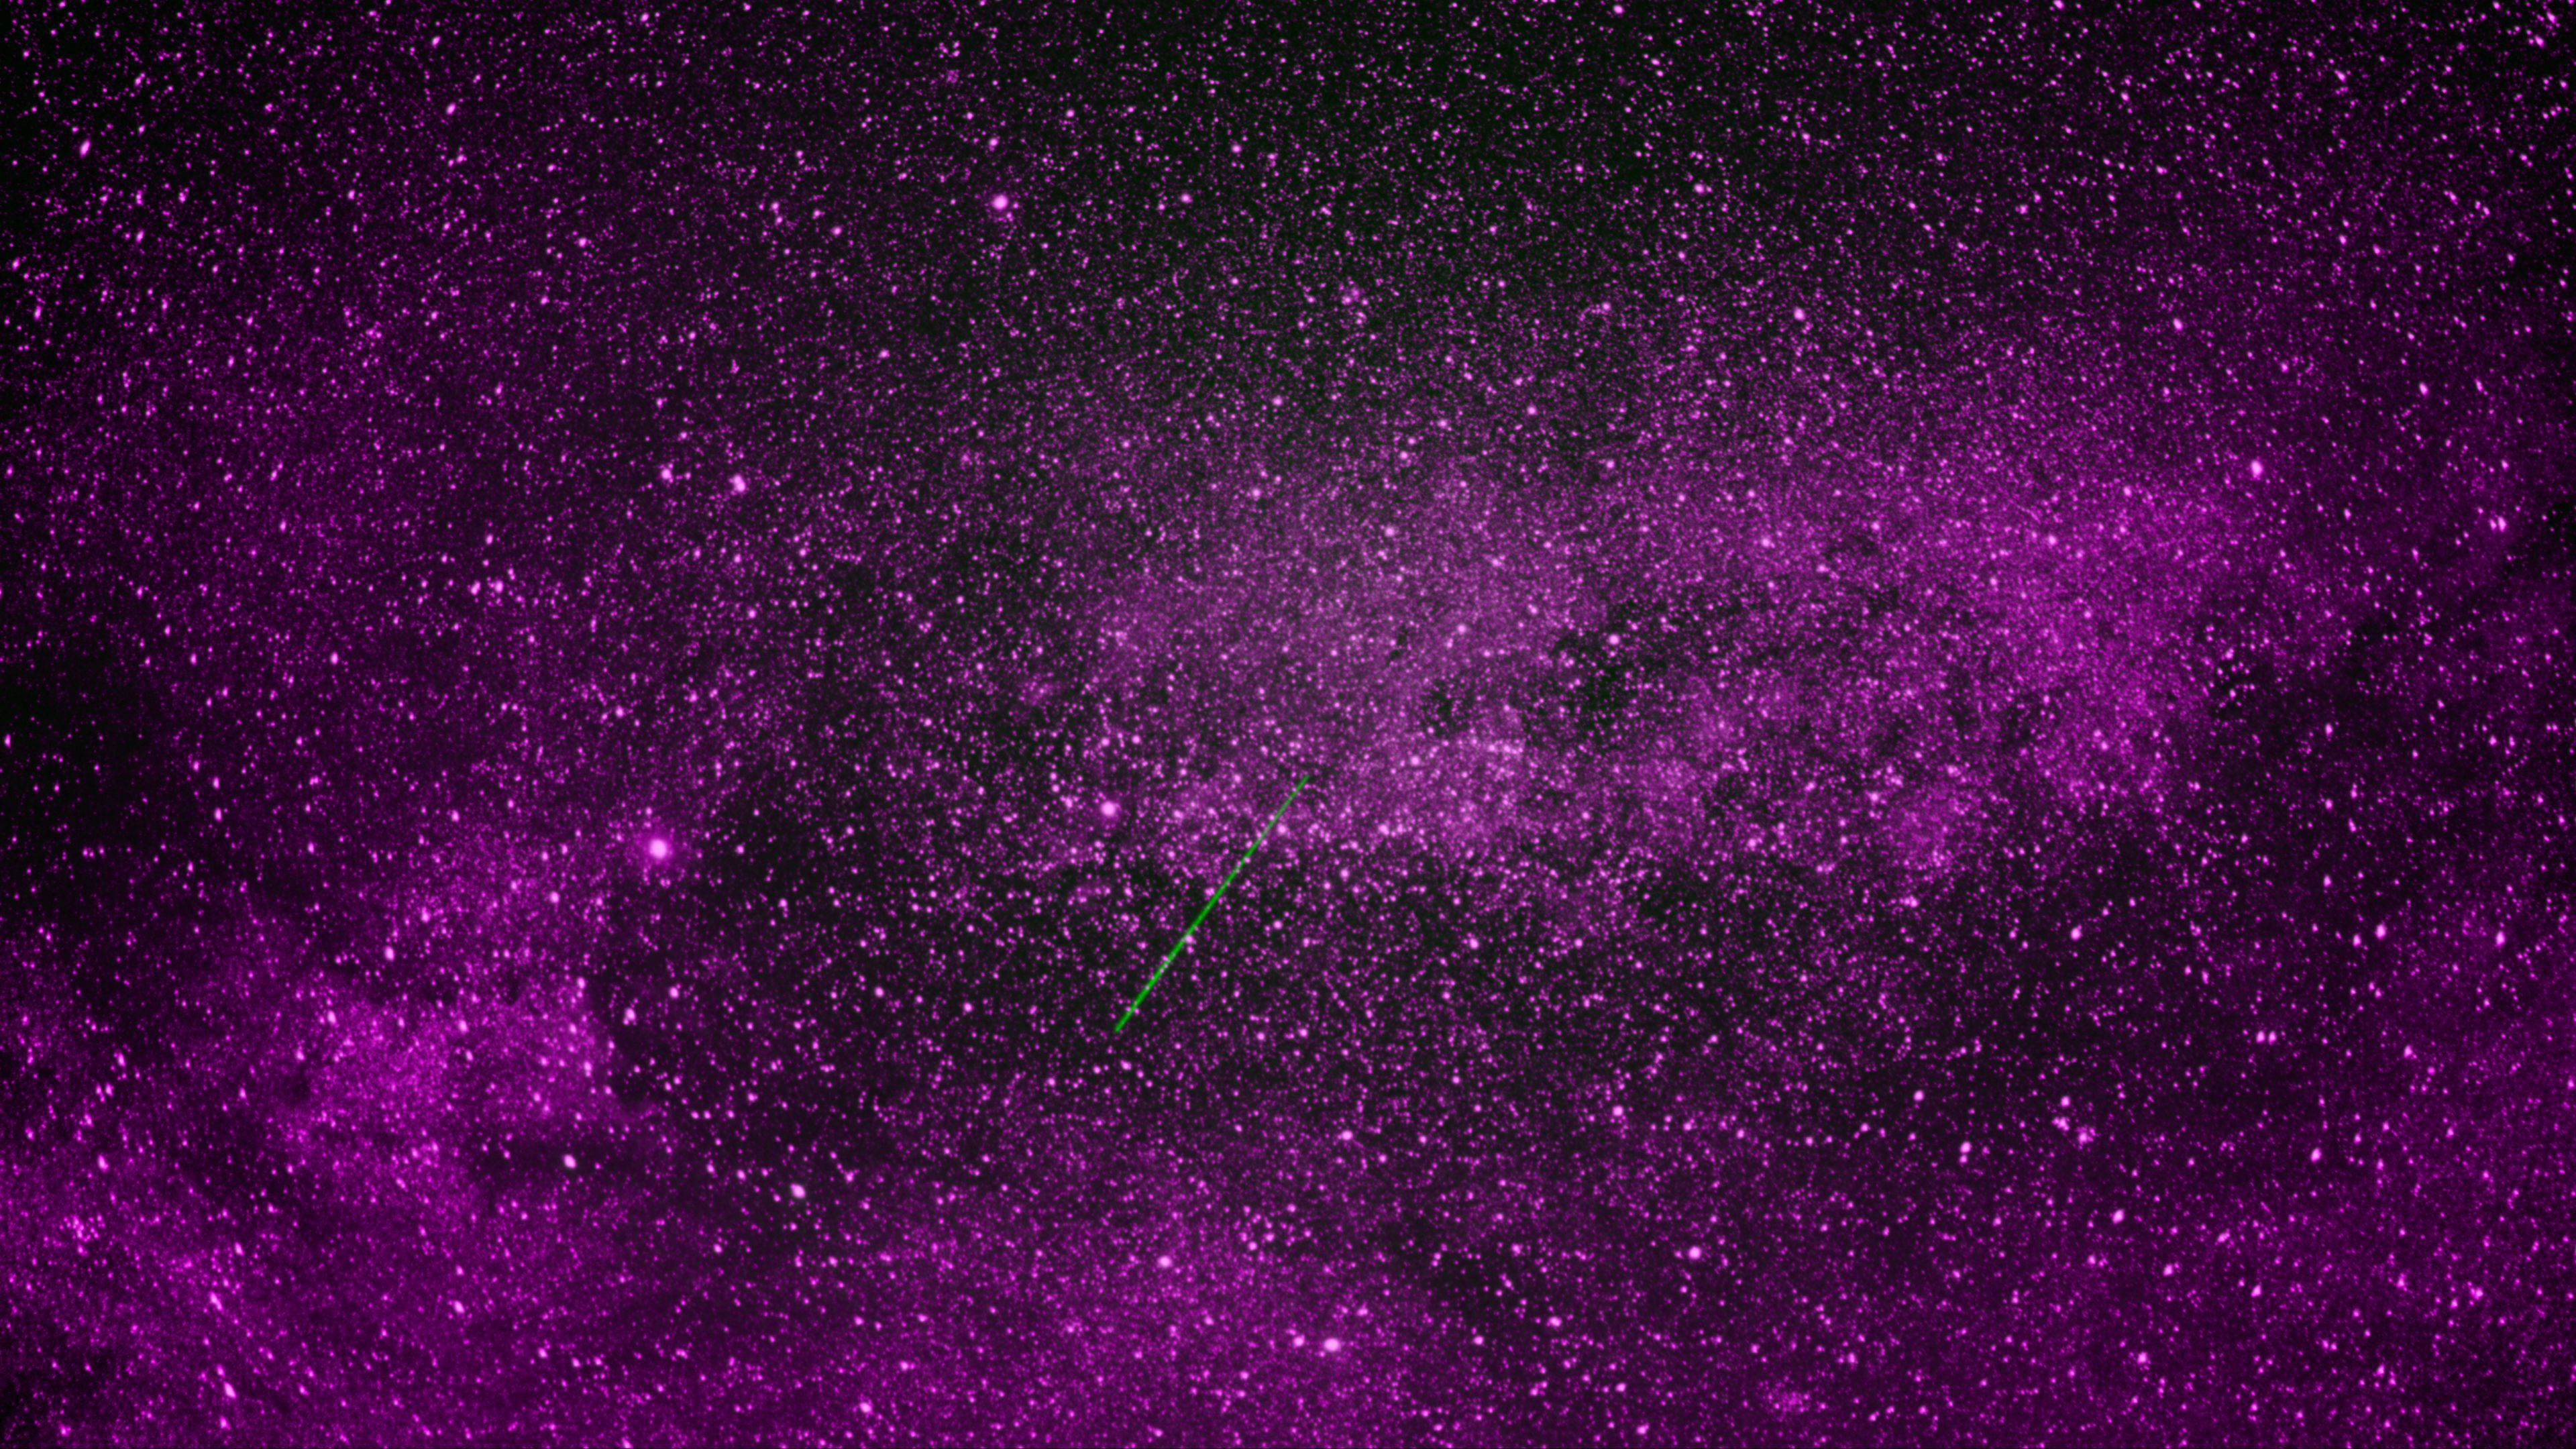 Download wallpaper 3840x2160 space, stars, starfall, purple 4k uhd 16:9 HD background